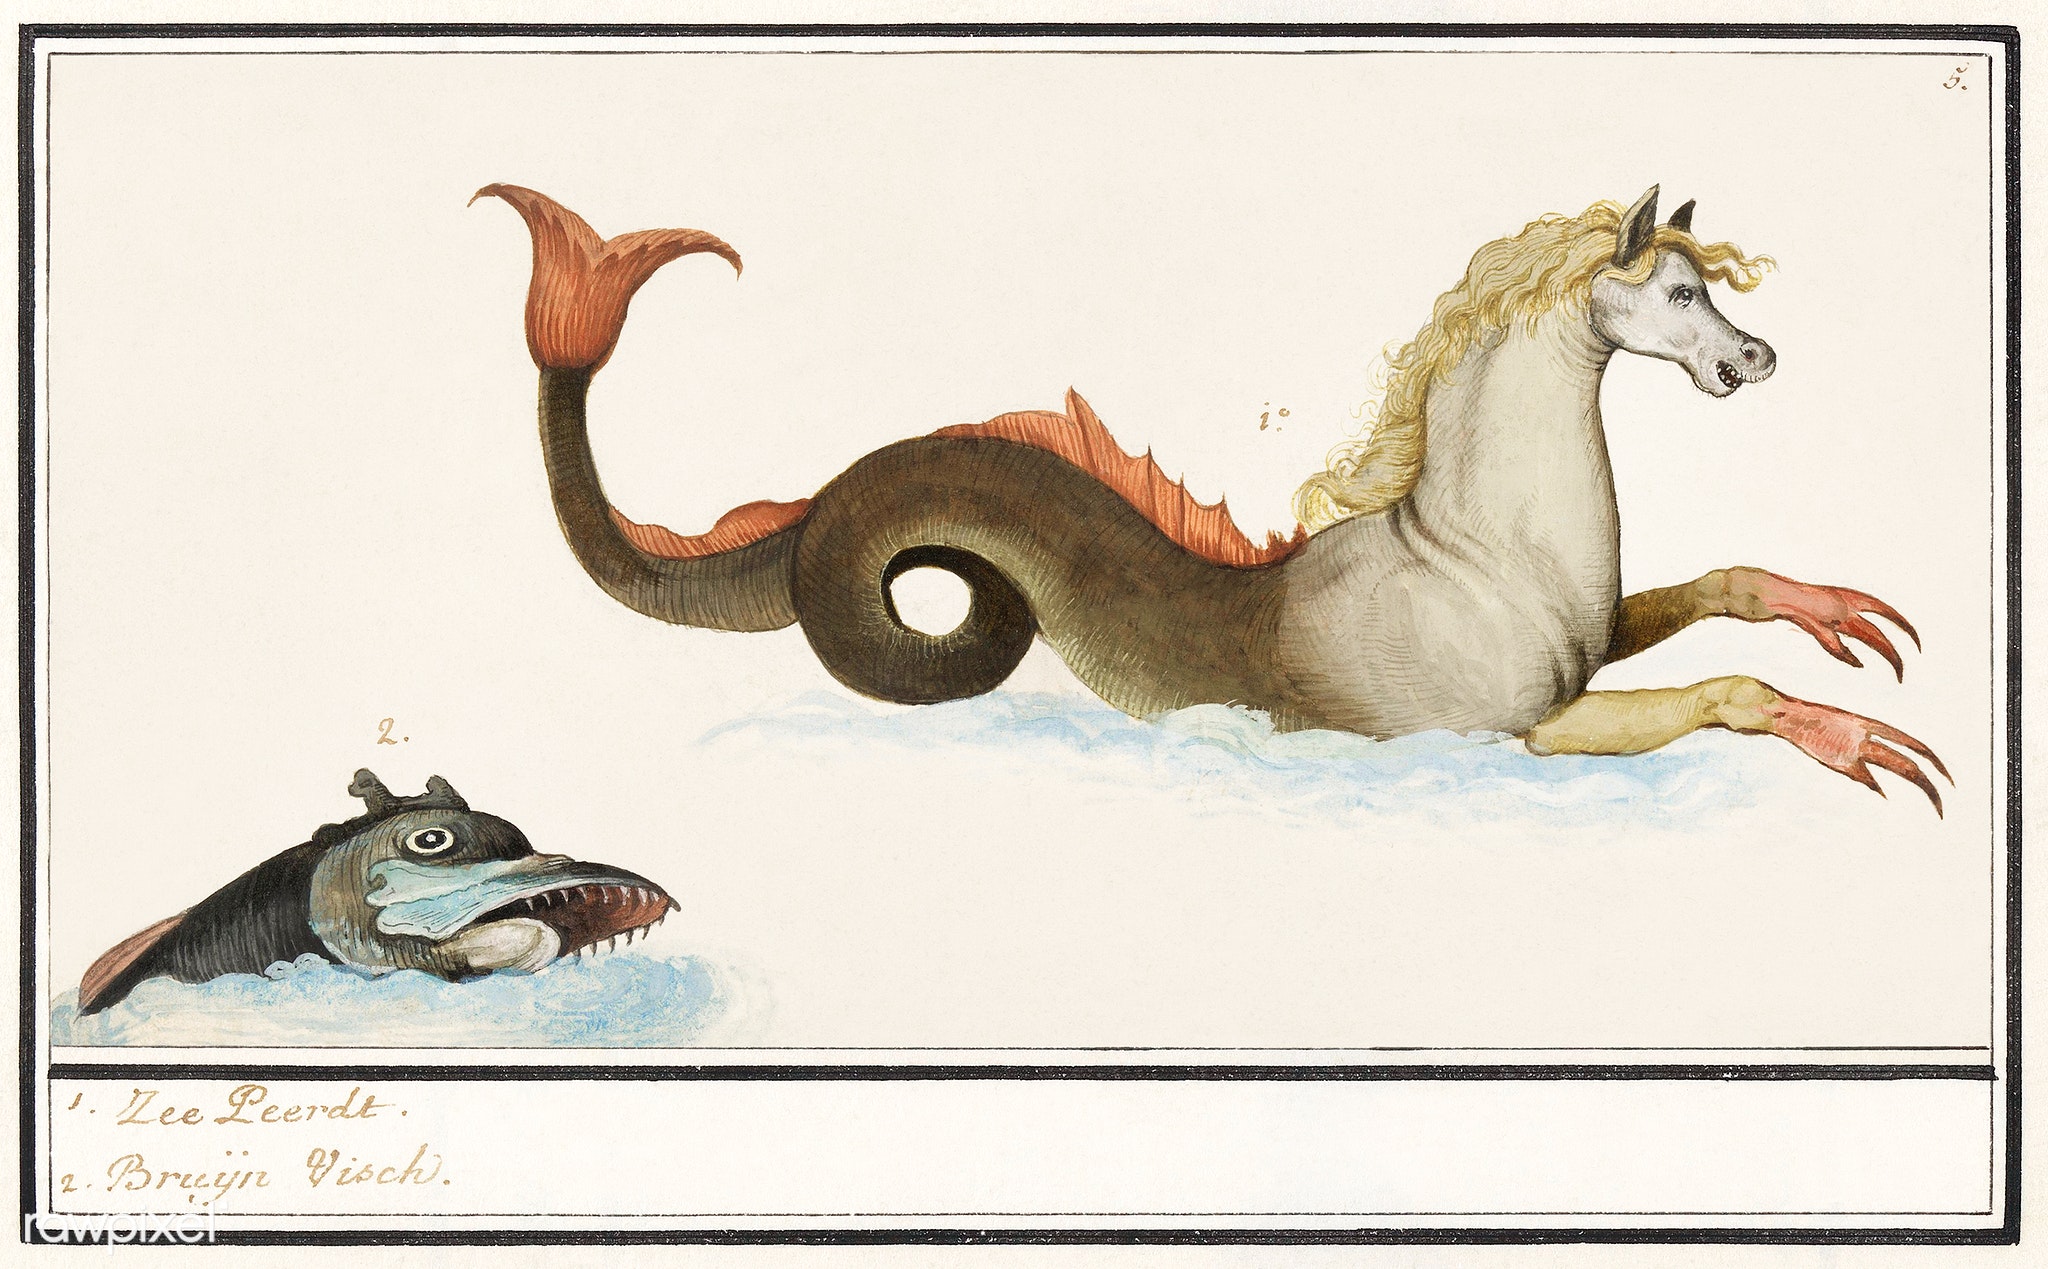 Anselmus de Boodt's Hippocampus and fish